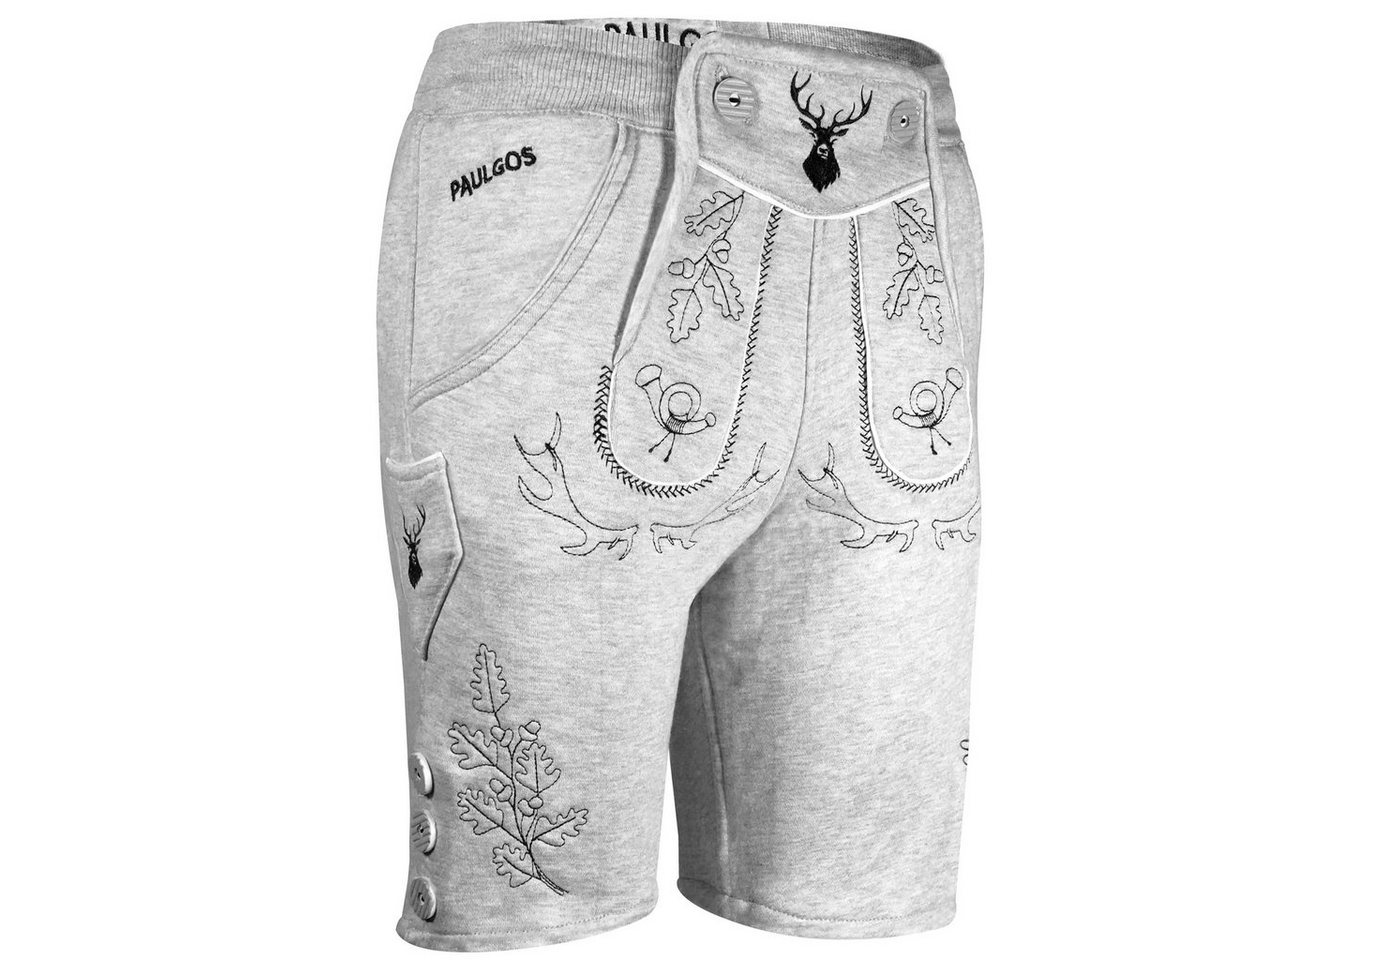 PAULGOS Trachtenhose Herren Jogginghose Design Lederhose Kurz Sweathose Bermuda Shorts JOK5 von PAULGOS